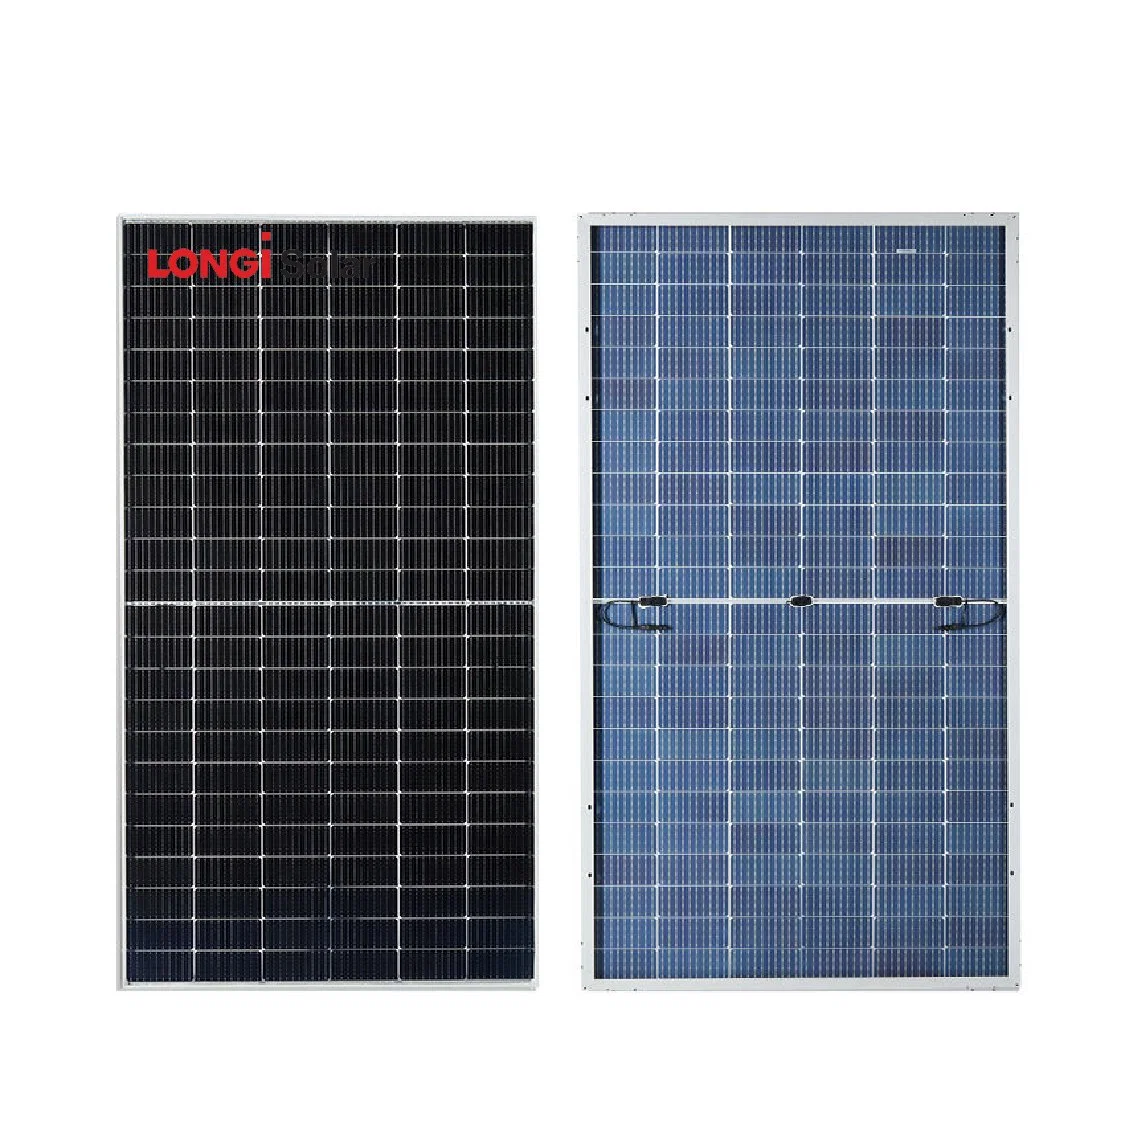 Longi Painéis Solares Fotovoltaicos Módulo Bificial Mono Perc 530W 535W 540W 545W 550W de energia do Painel Solar com 25 anos de garantia